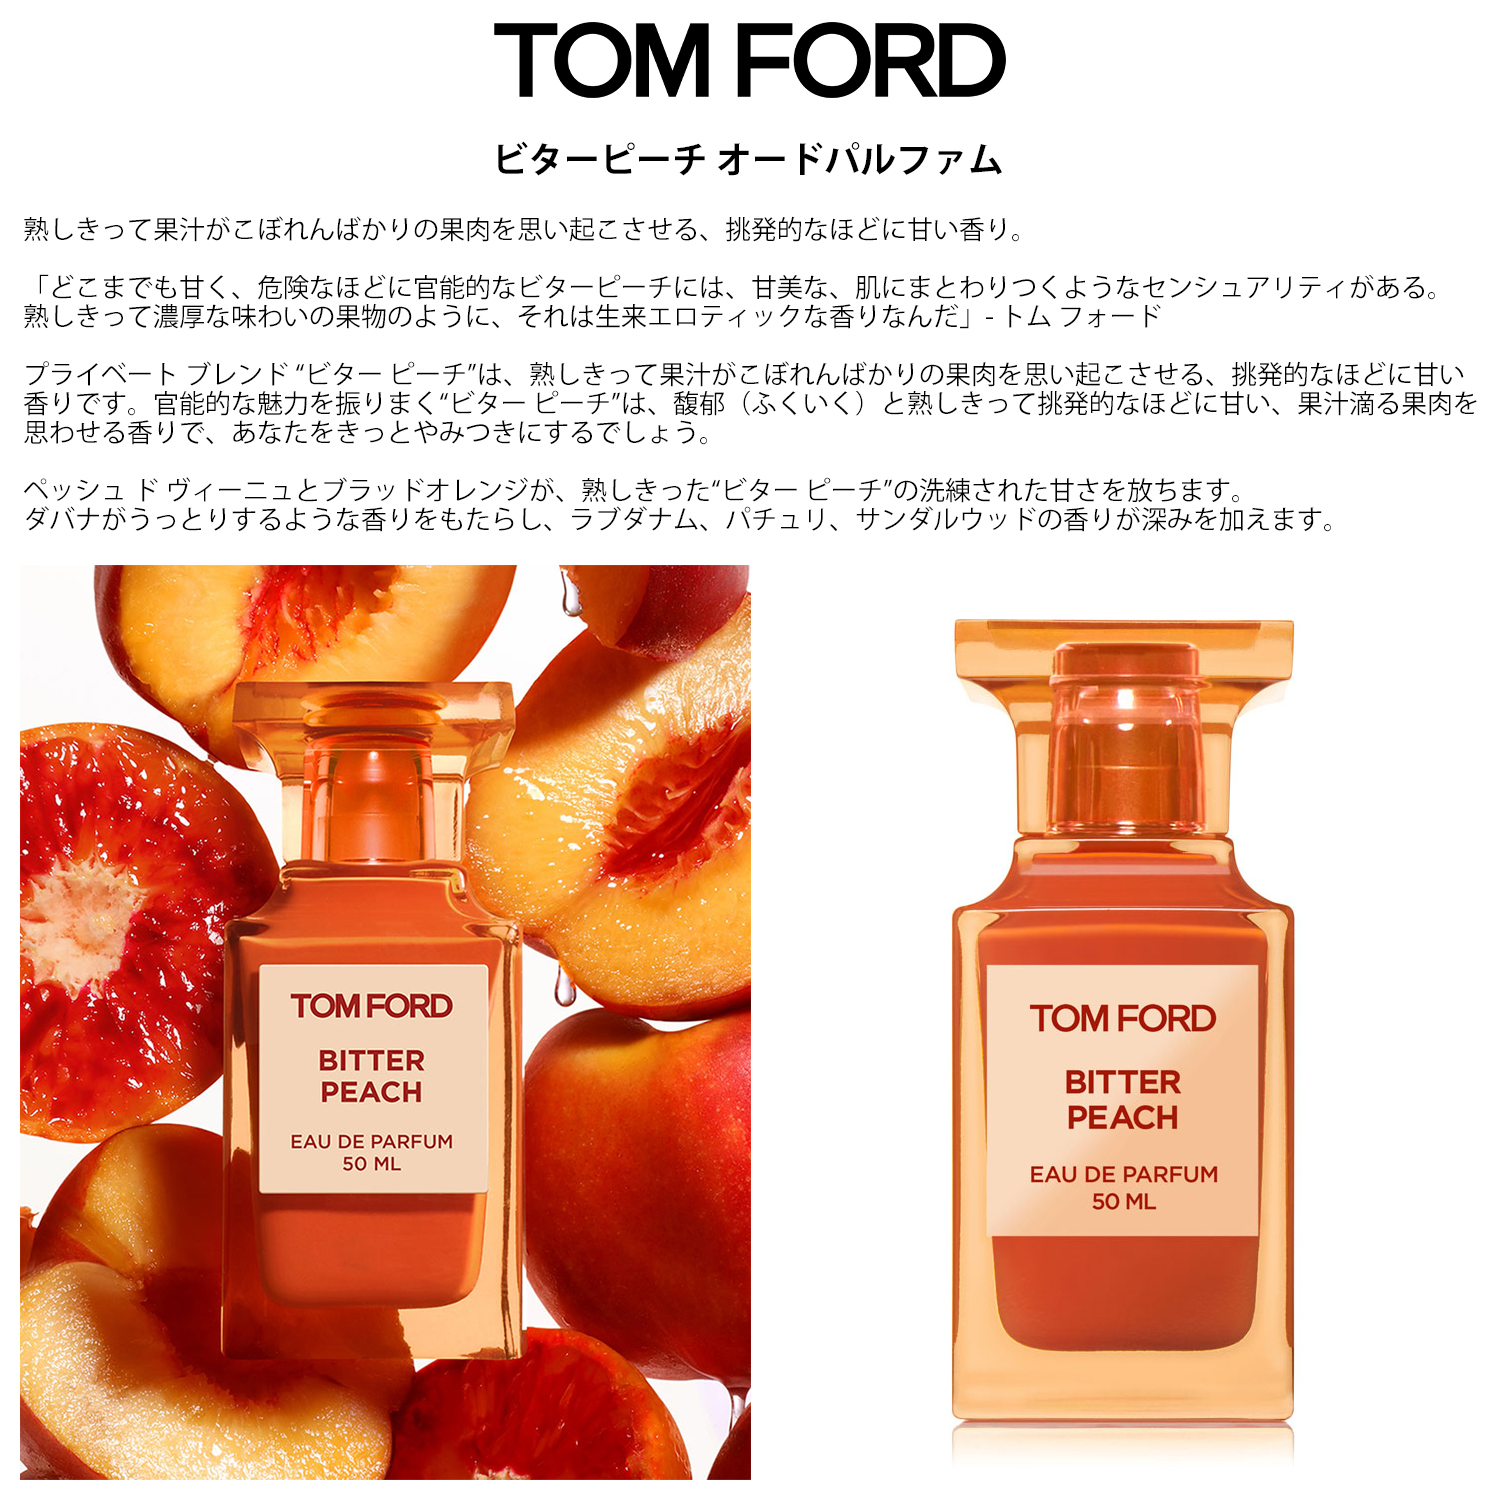 TOMFORD トムフォード 香水 お試し 1ml 選べる 2本セット 人気 メンズ レディース ユニセックス